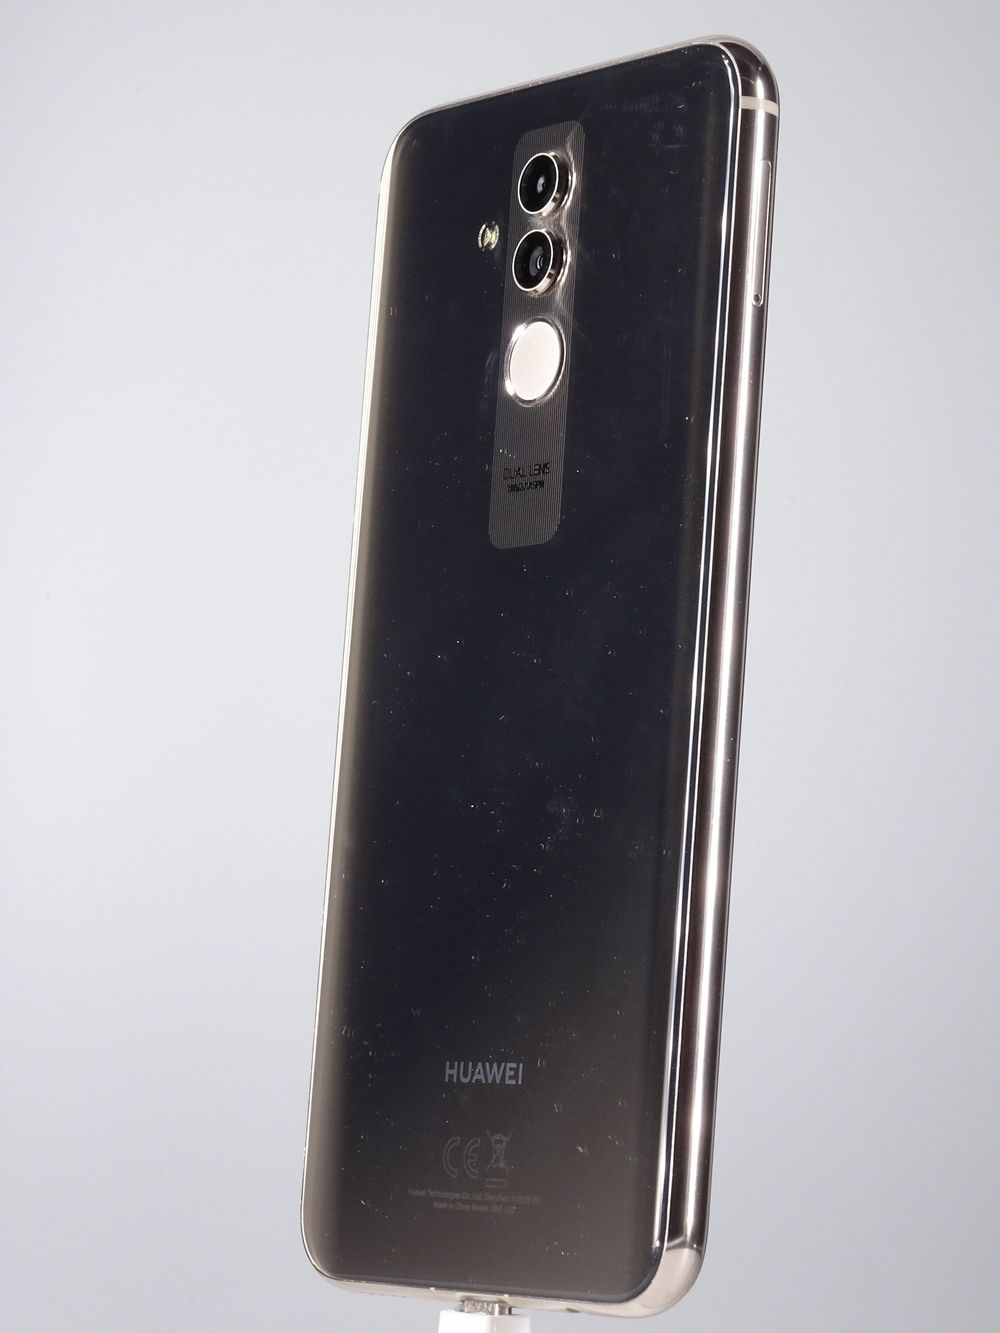 Мобилен телефон Huawei, Mate 20 Lite, 64 GB, Platinum Gold,  Като нов